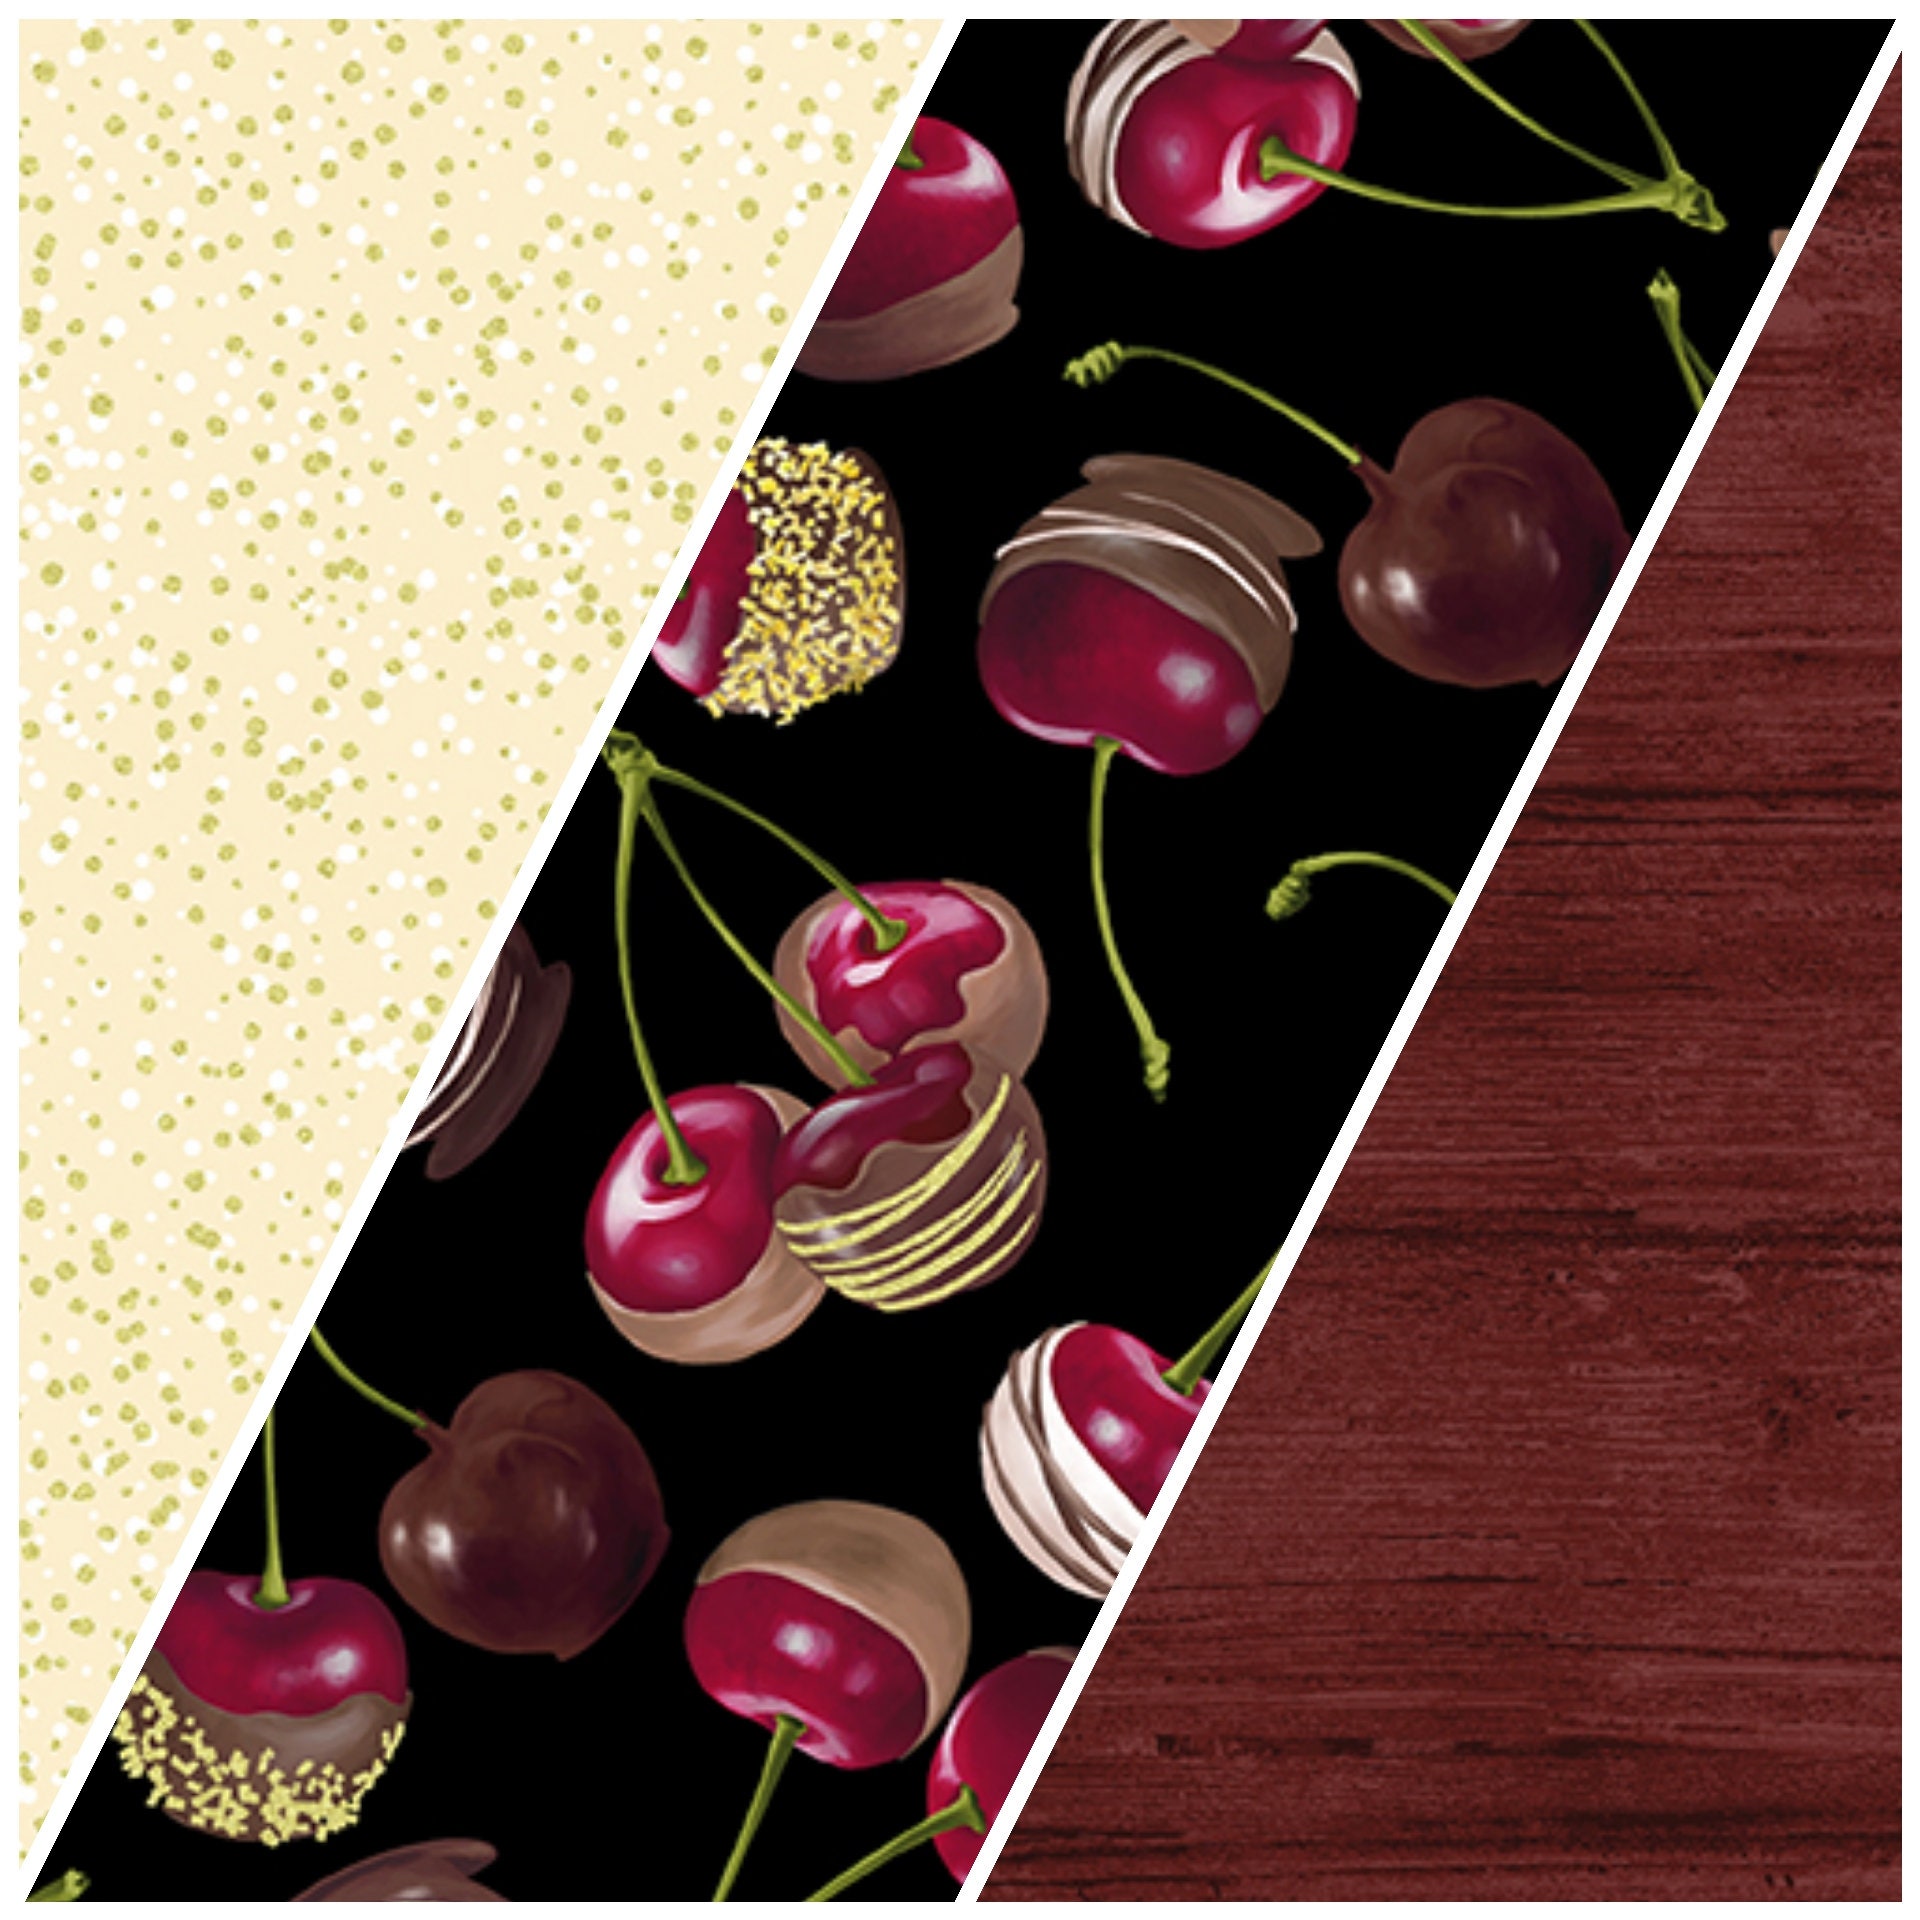 Chocolicious - Chocolate Cherries Black Digitally Printed Yardage